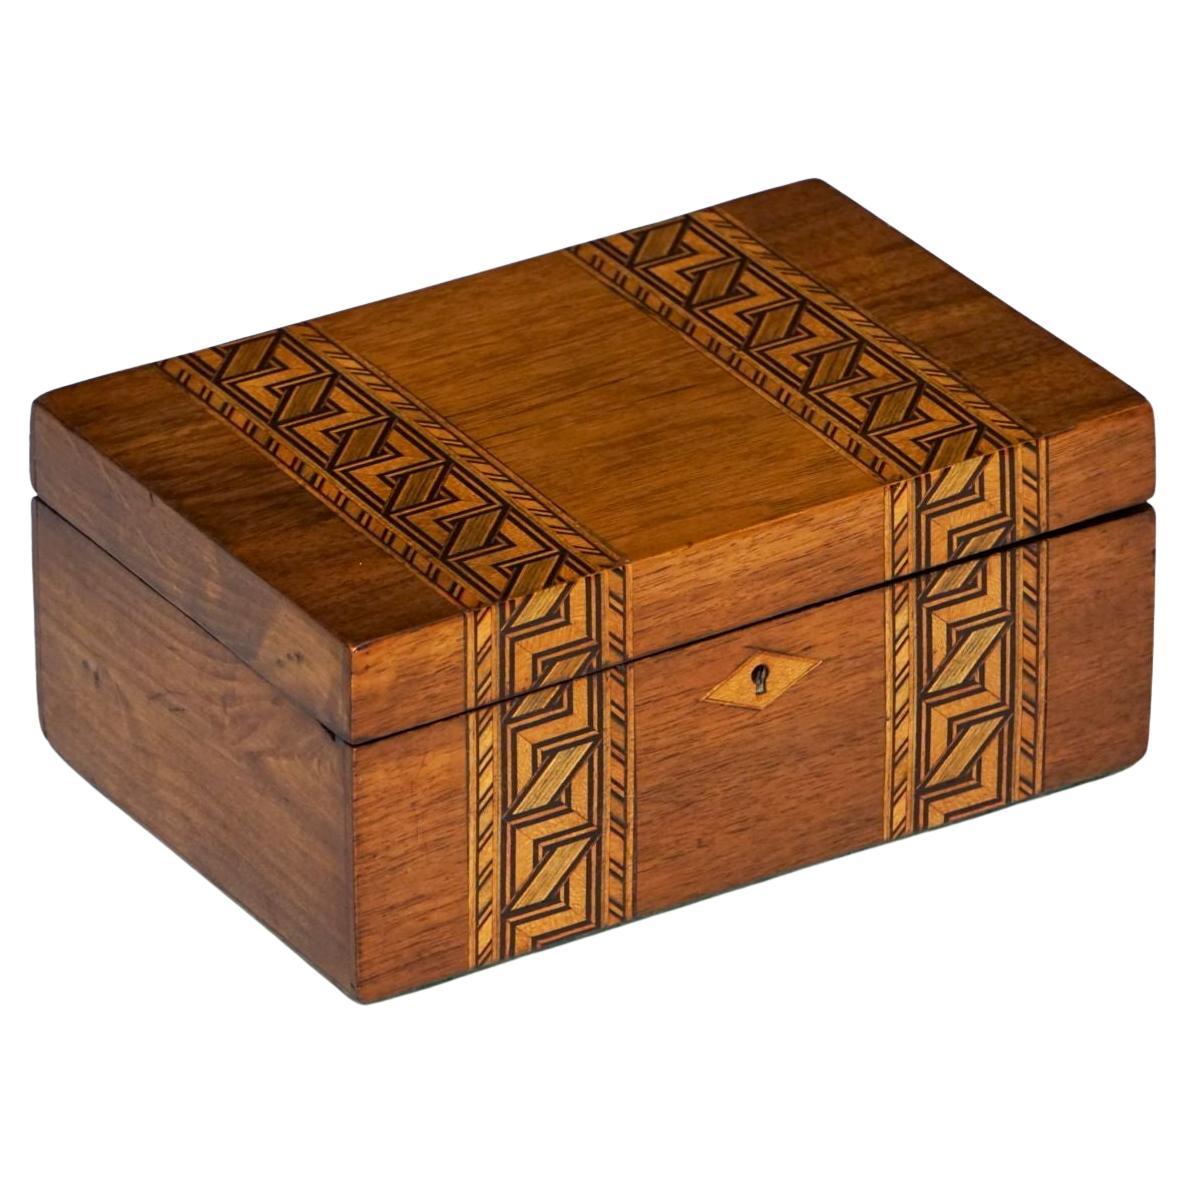 Tunbridgeware Rectangular Box of Inlaid Wood from England